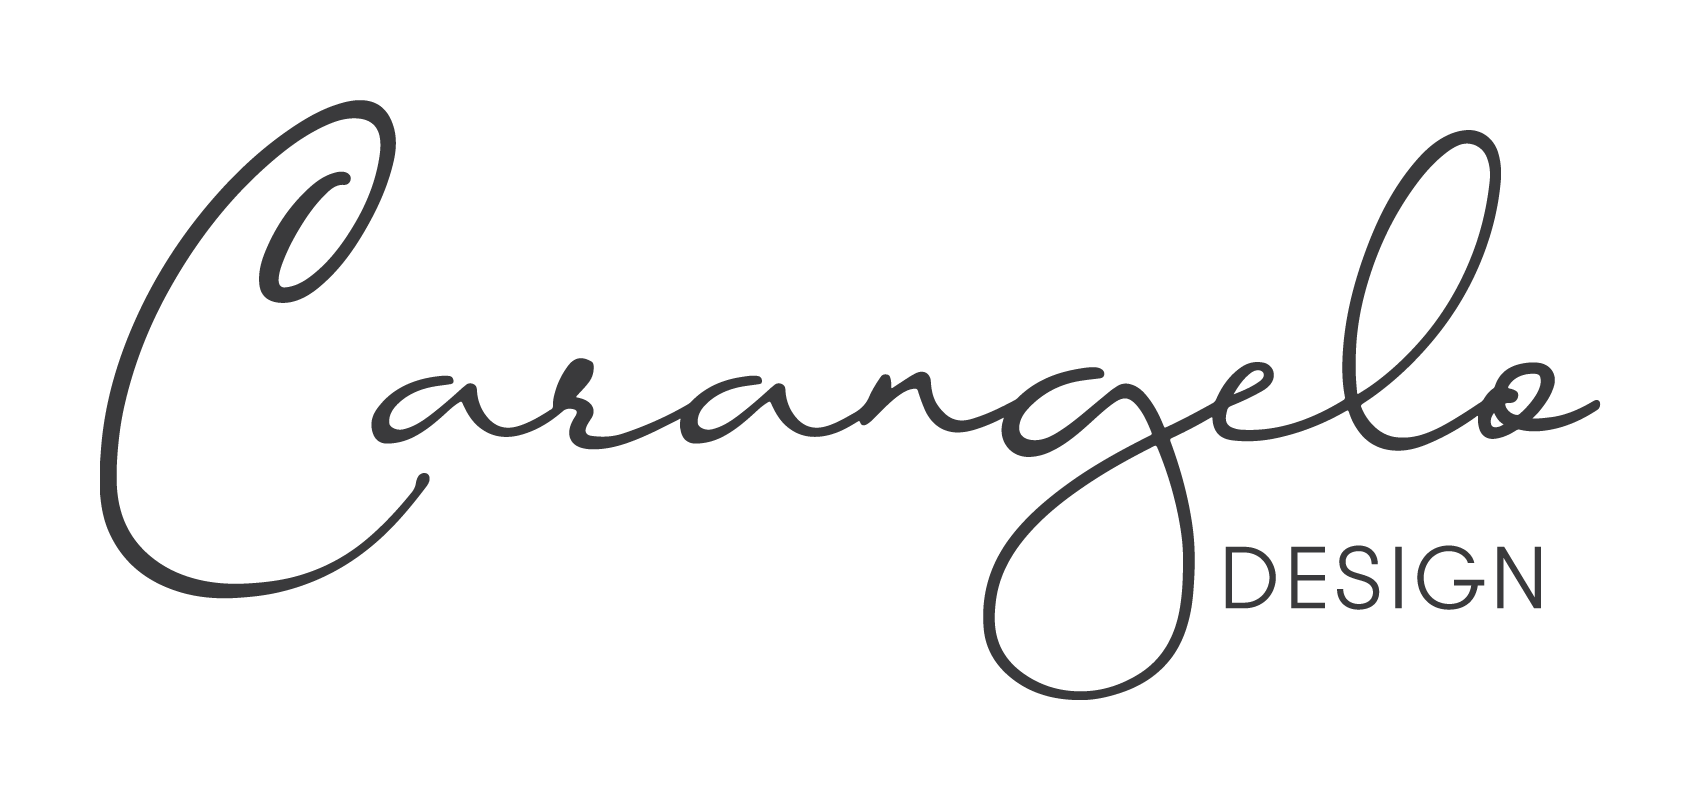 Carangelo Design logo